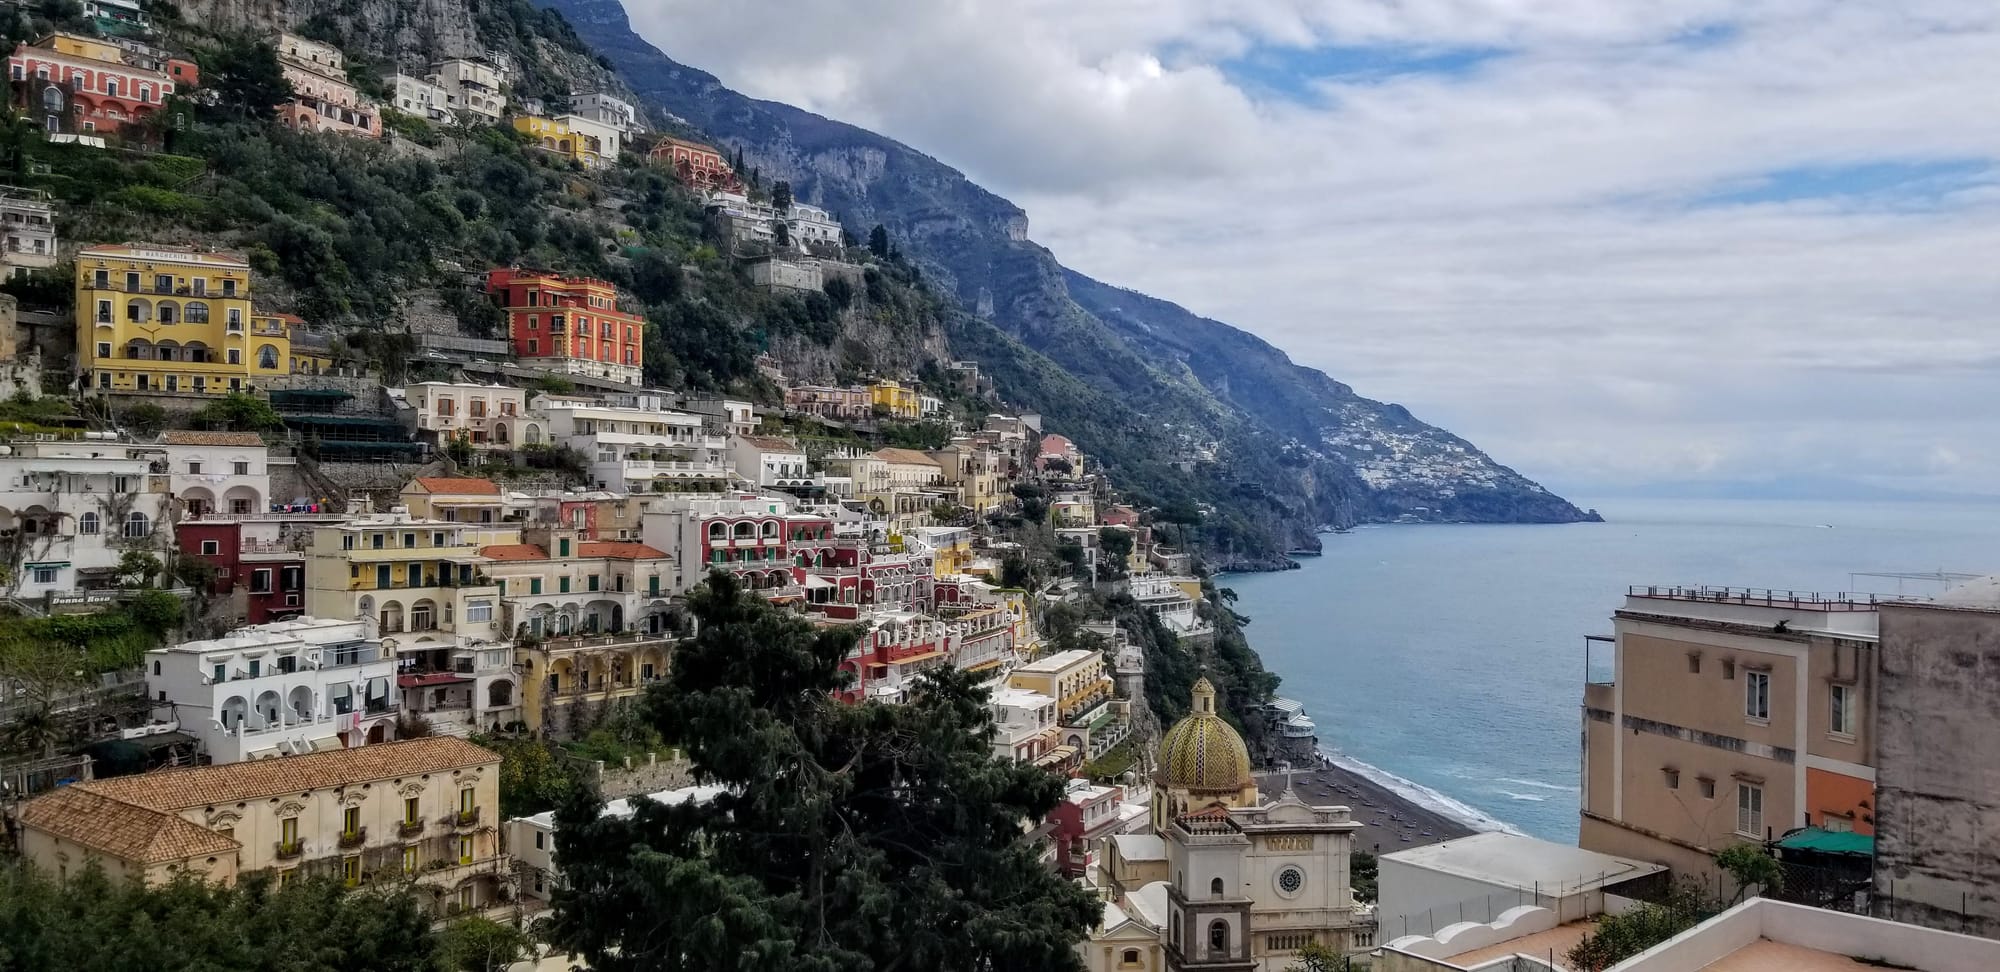 The Amazing Amalfi Coast